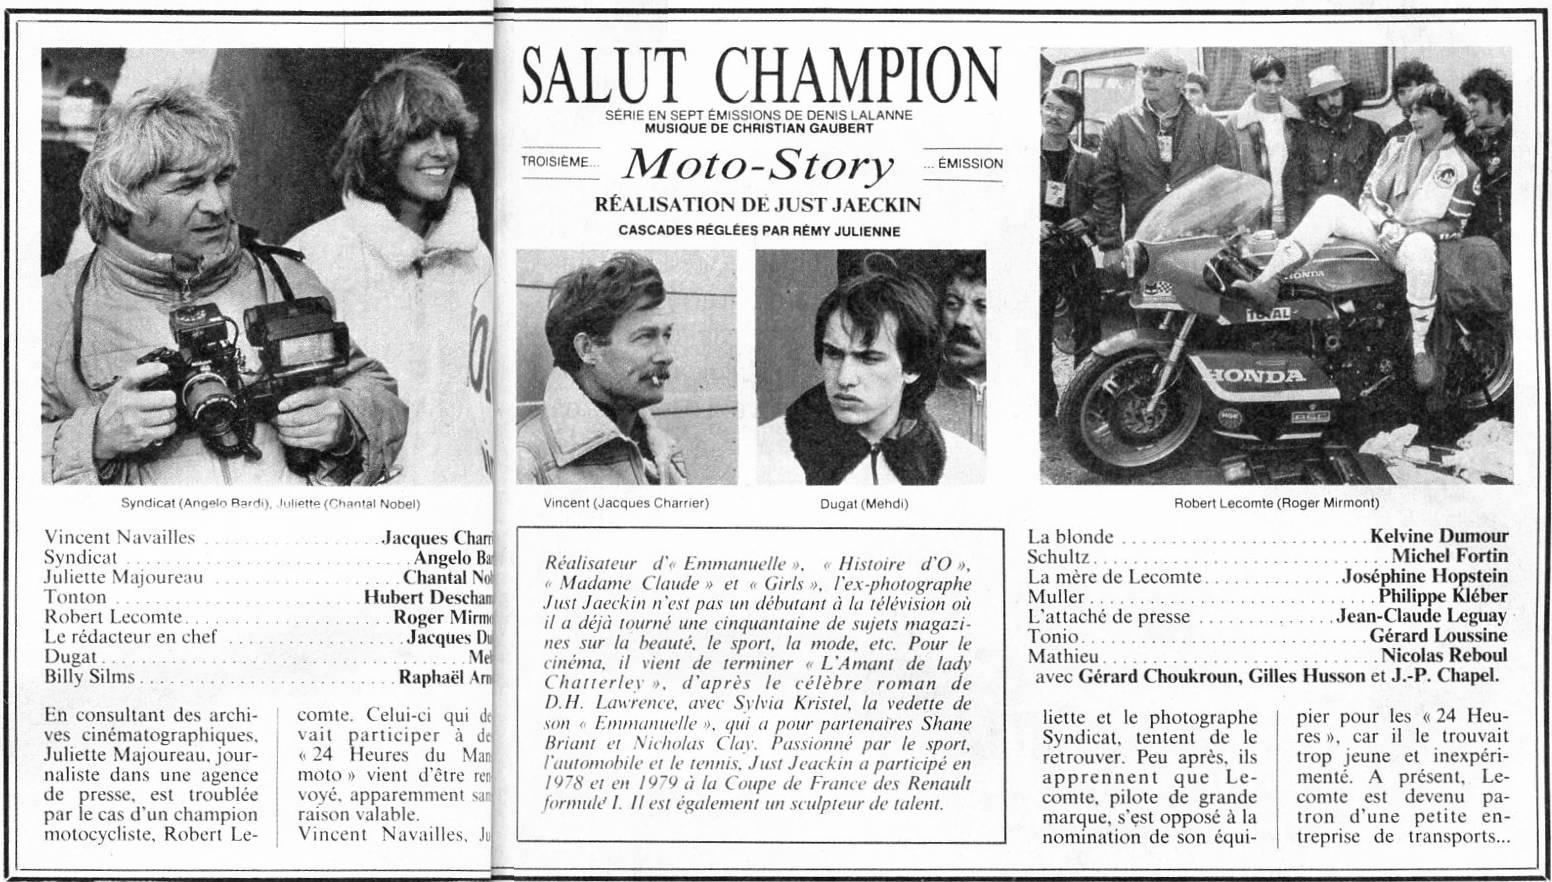 Salut champion - Moto Story © Base de Données de films français avec images